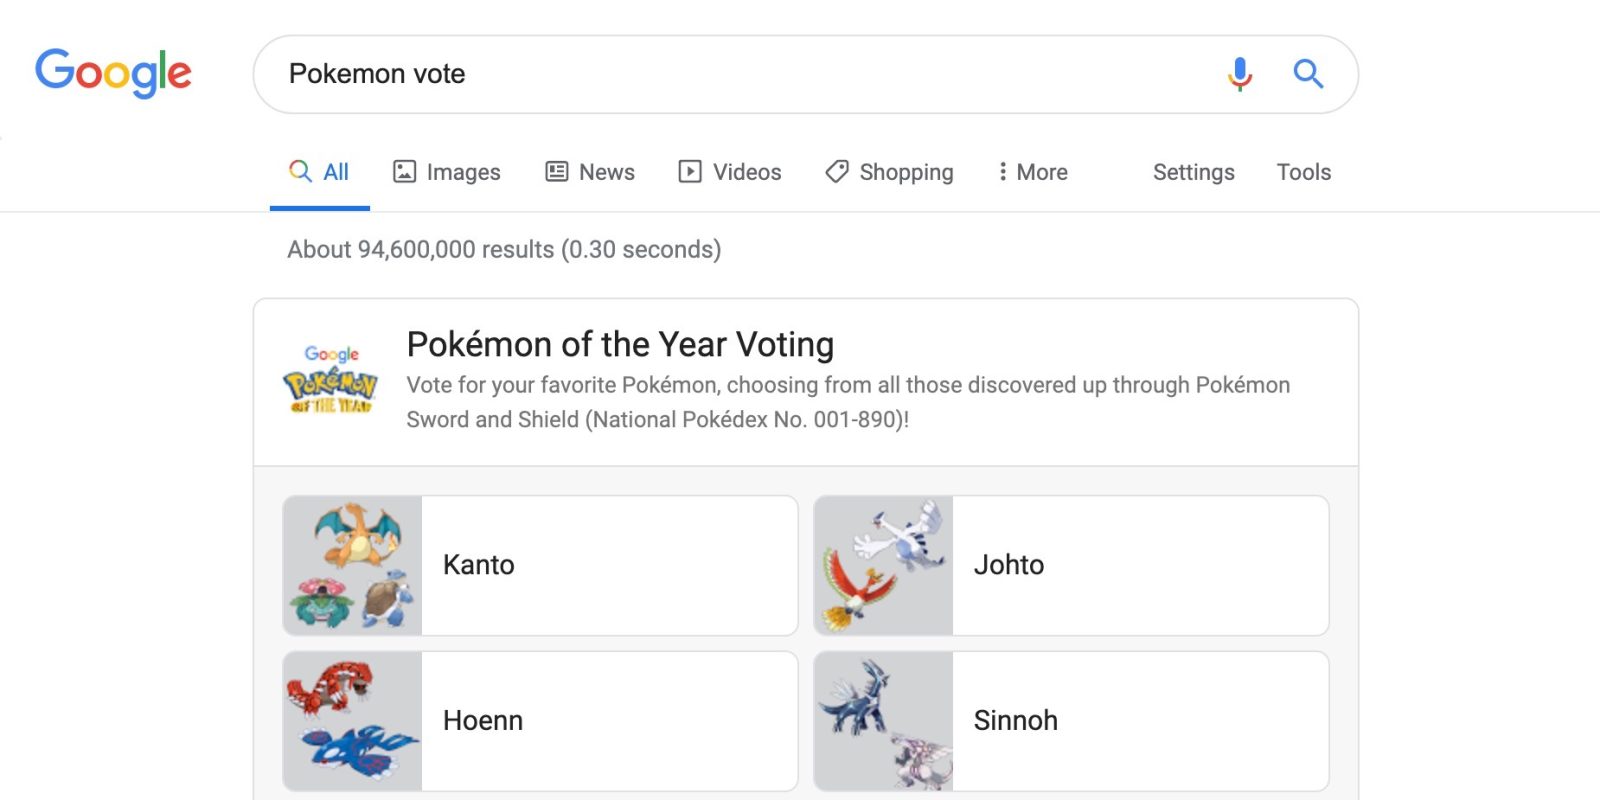 unova region pokemon go - Google Search